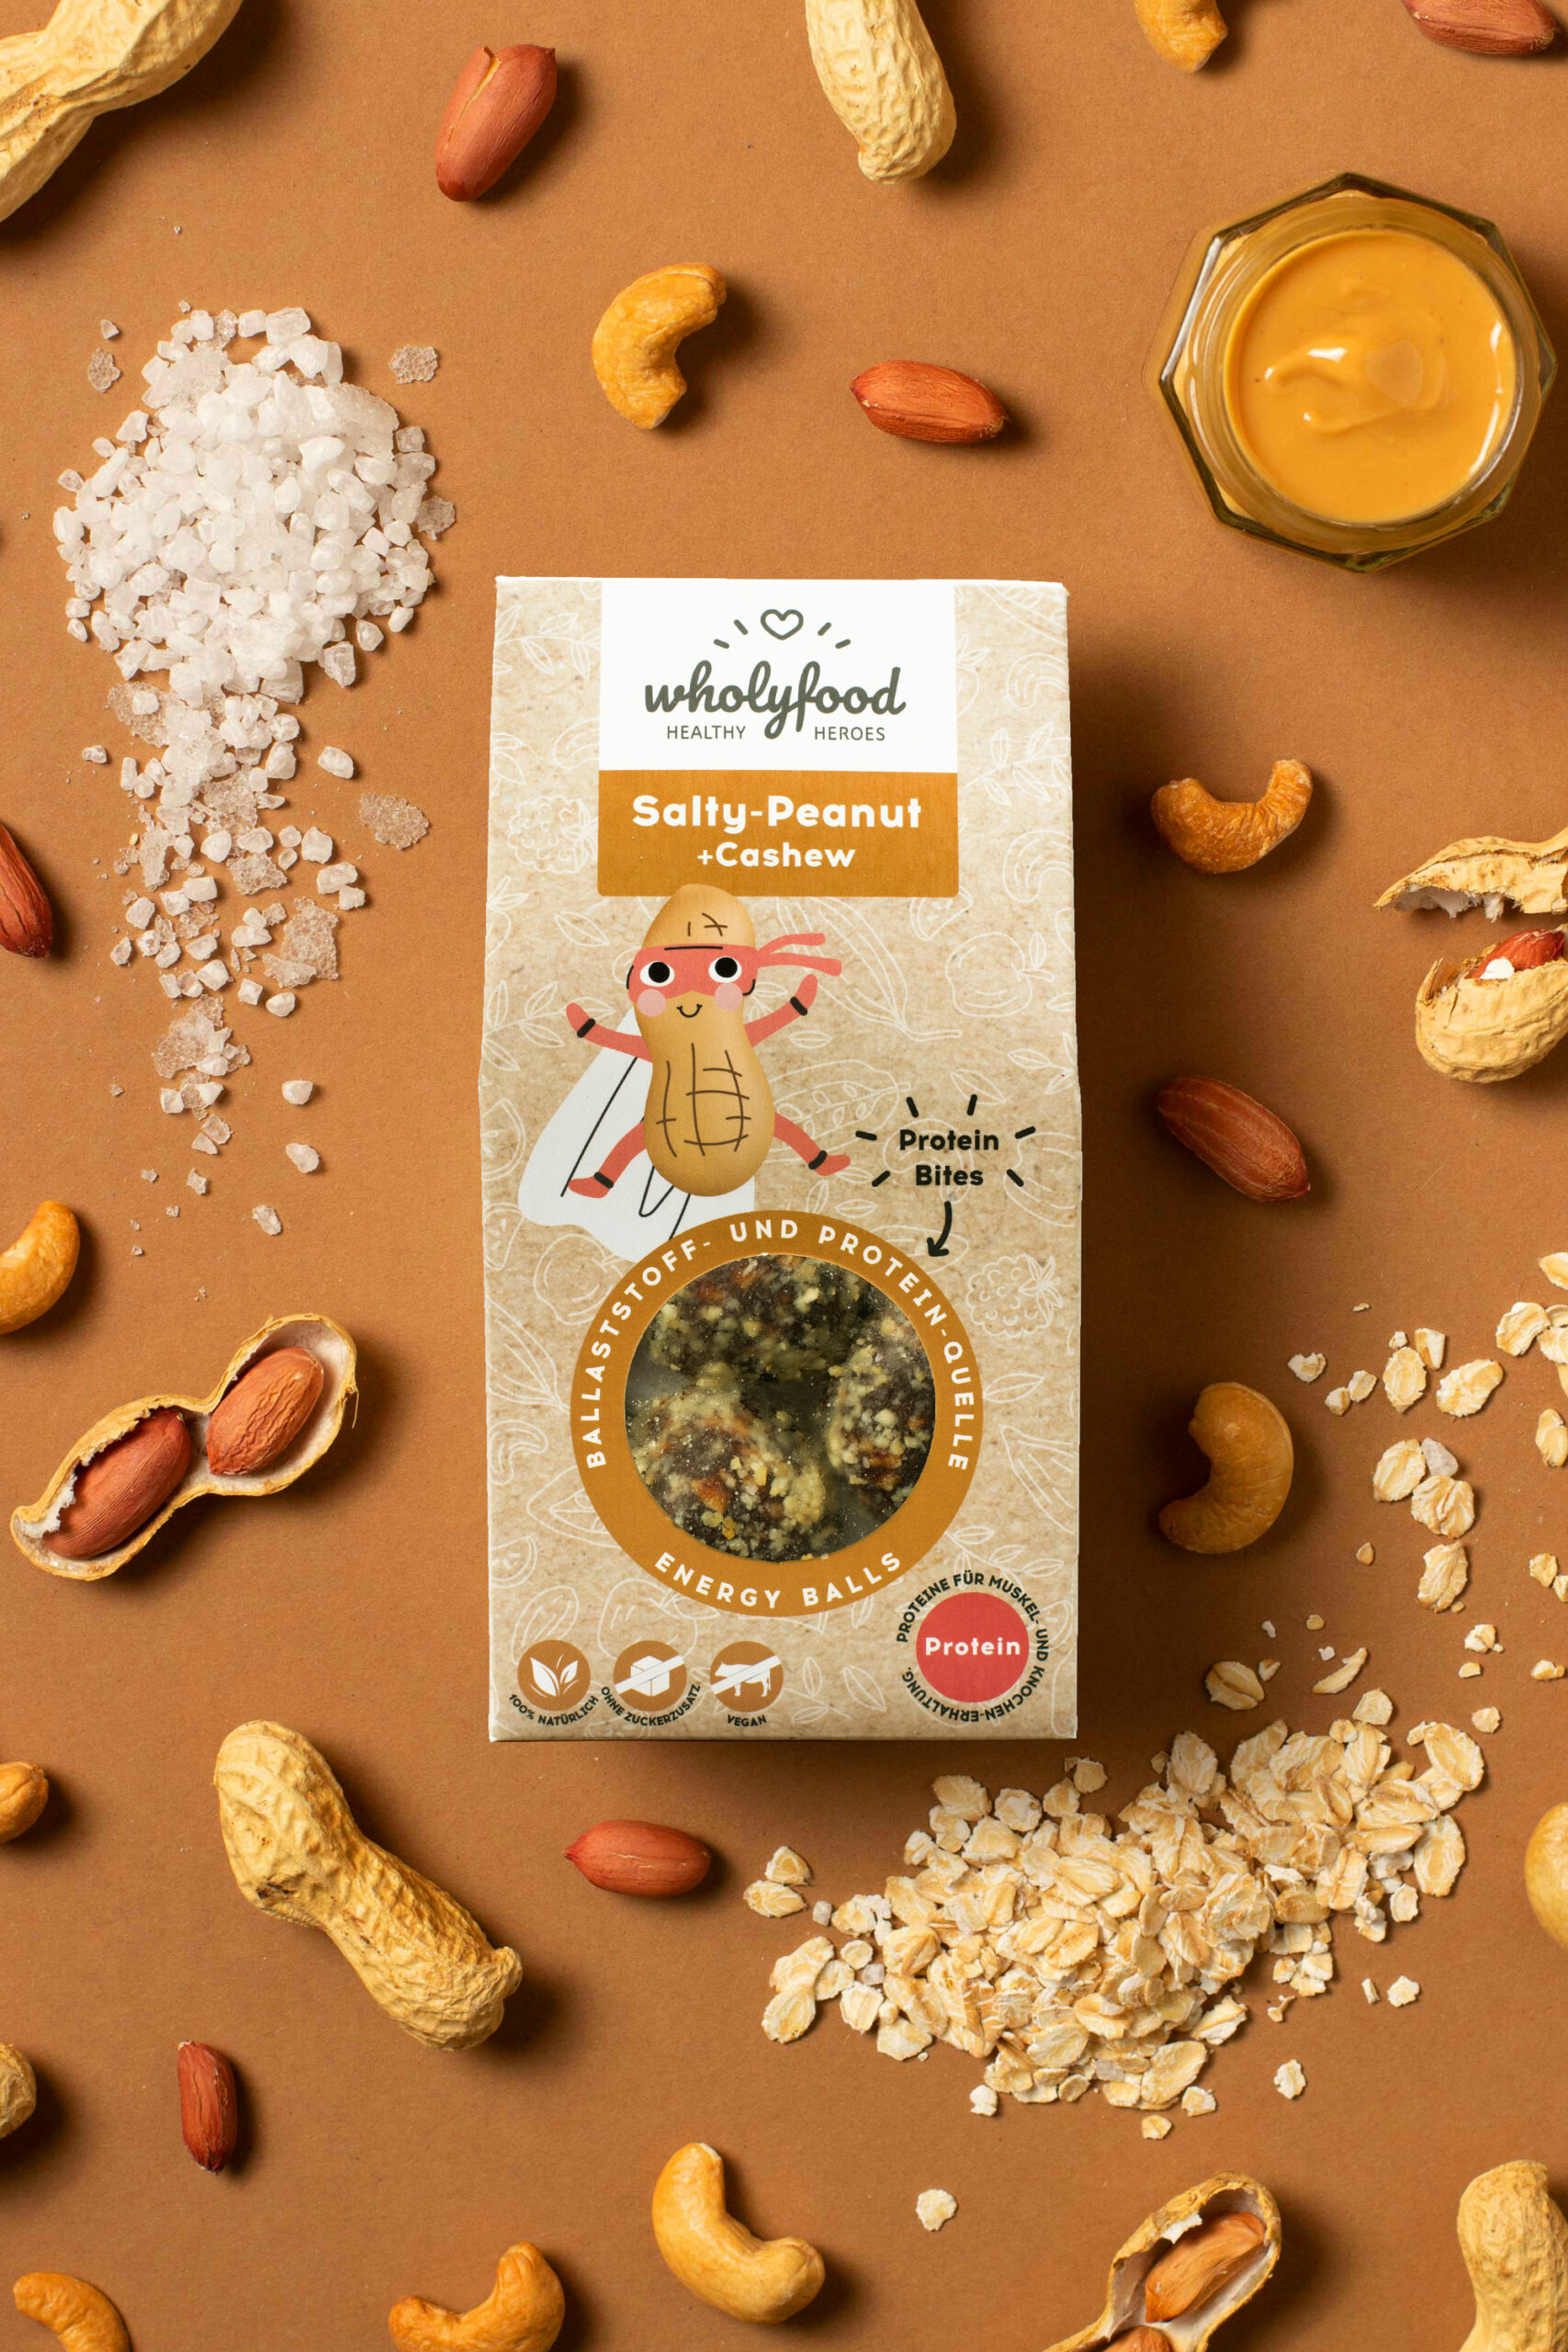 wholyfood_packaging_ingredients_Peanut